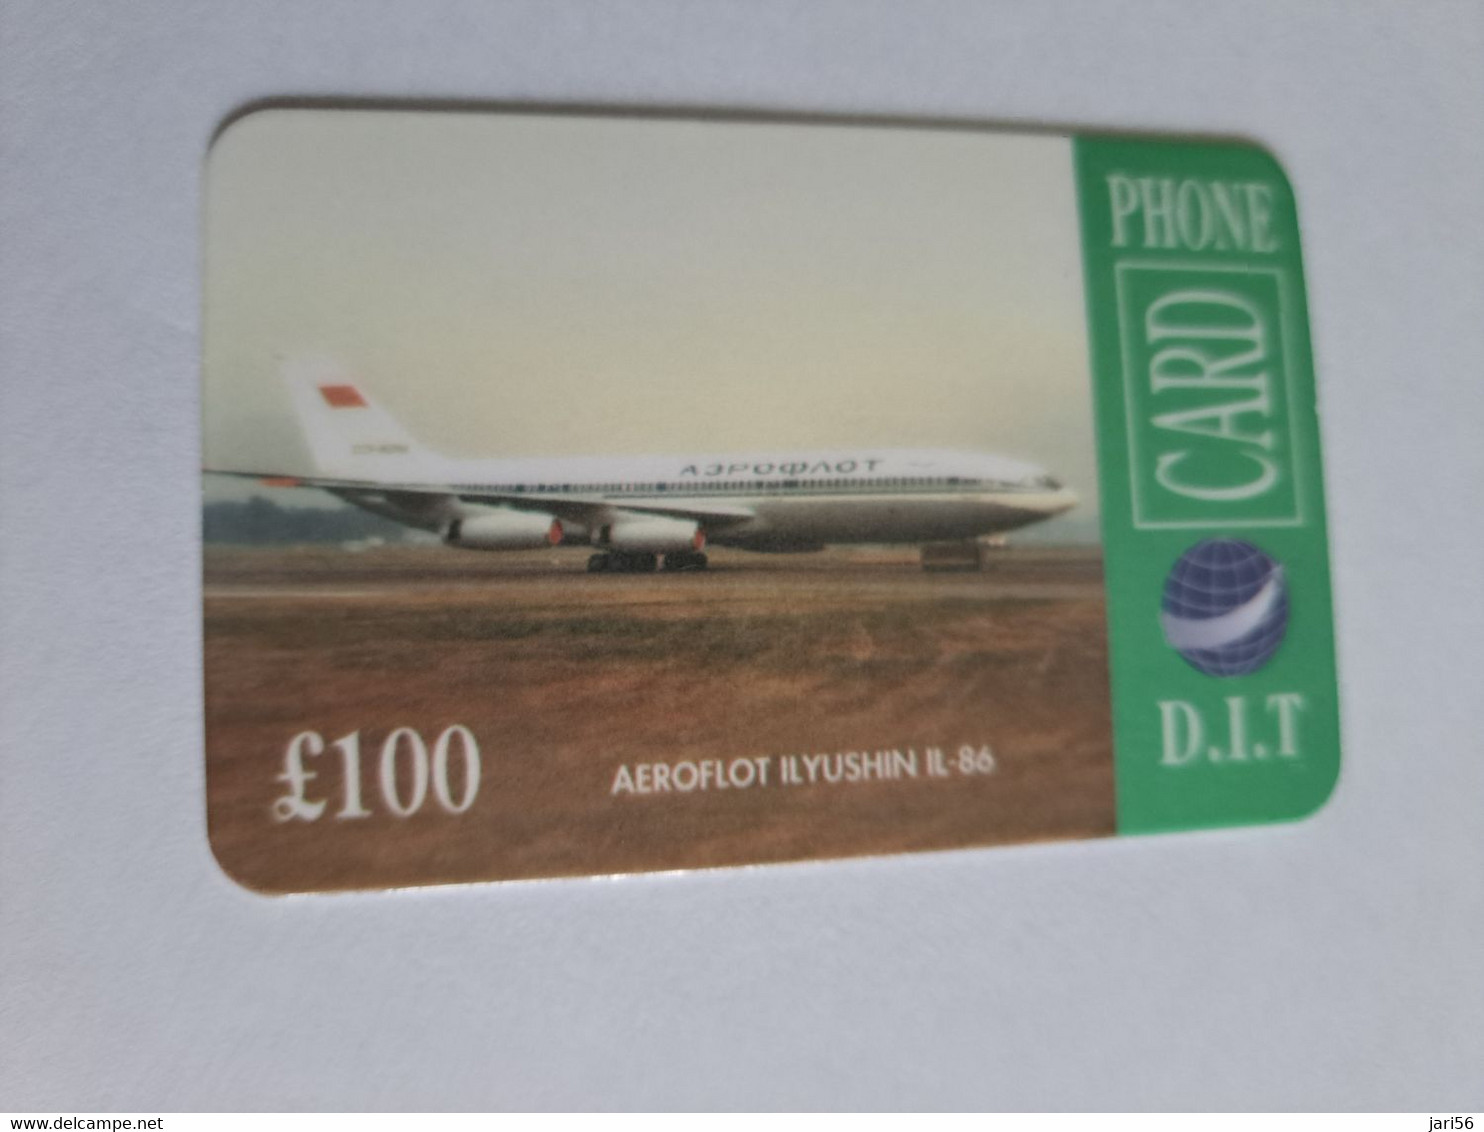 GREAT BRITAIN   100 POUND   / AEROFLOT YUSHIN FL 86    DIT PHONECARD    PREPAID CARD      **12902** - Collezioni